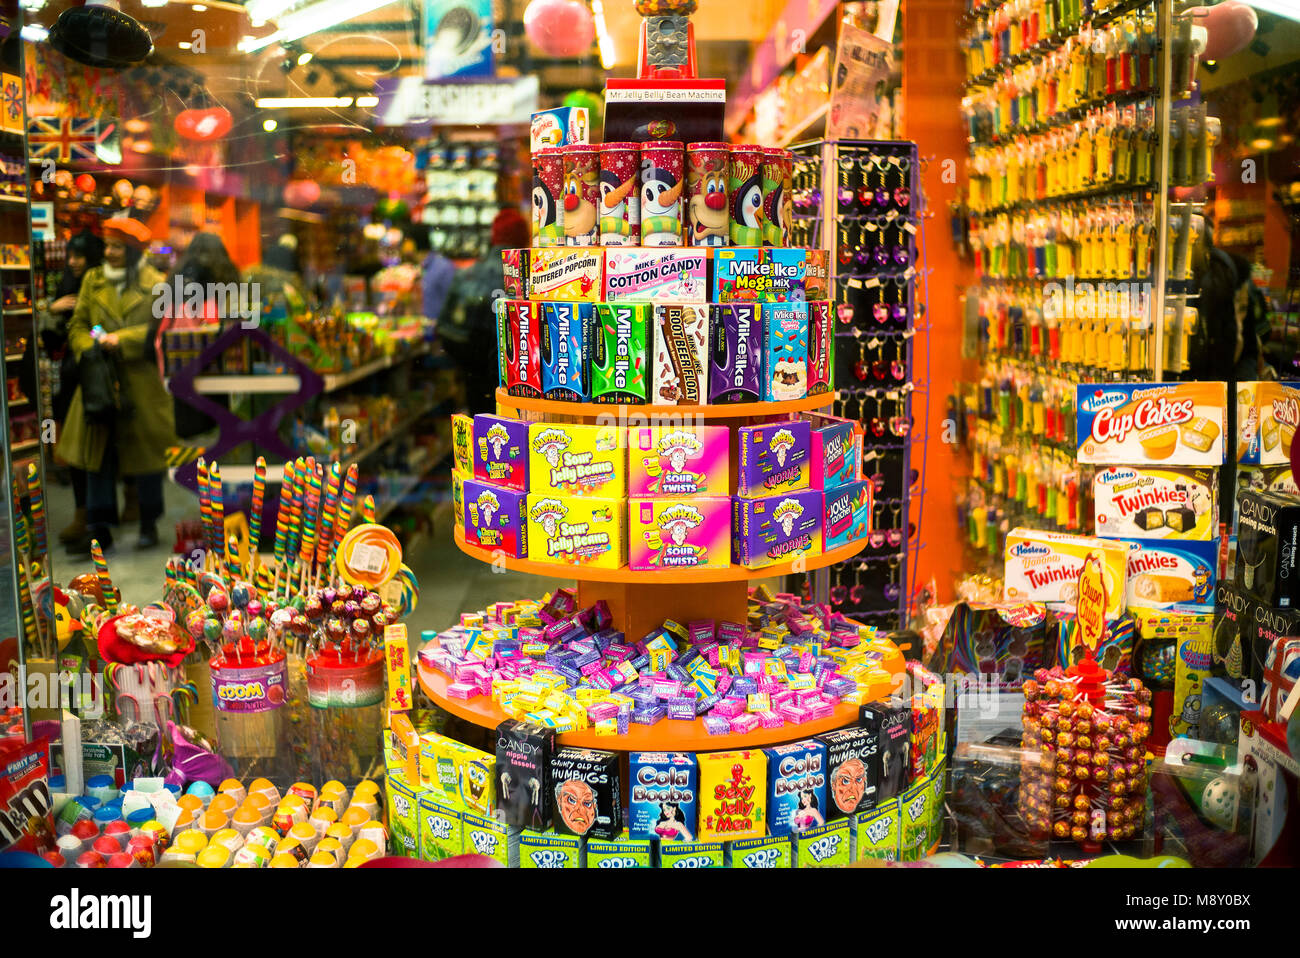 American Candy Co, Sweet Candy Shop intérieur, marché Camden Londres Banque D'Images